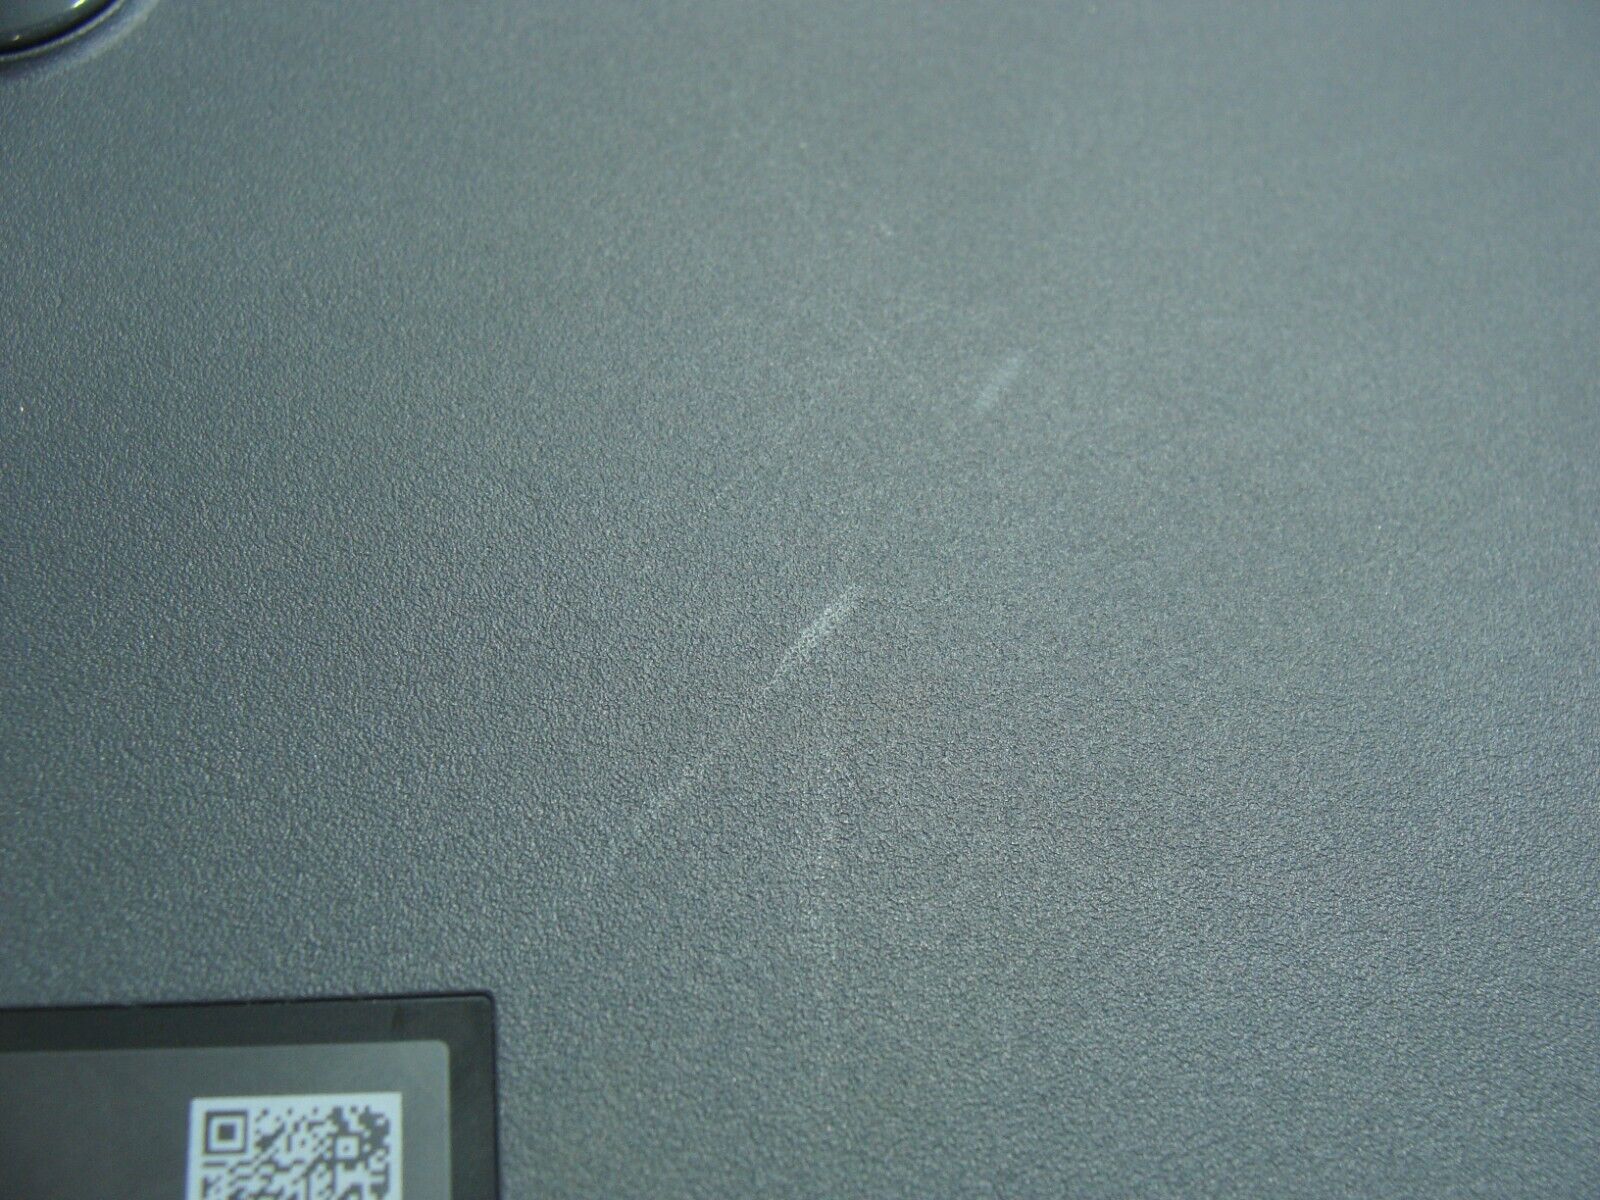 Asus Chromebook CX22NA-211.BB01 11.6